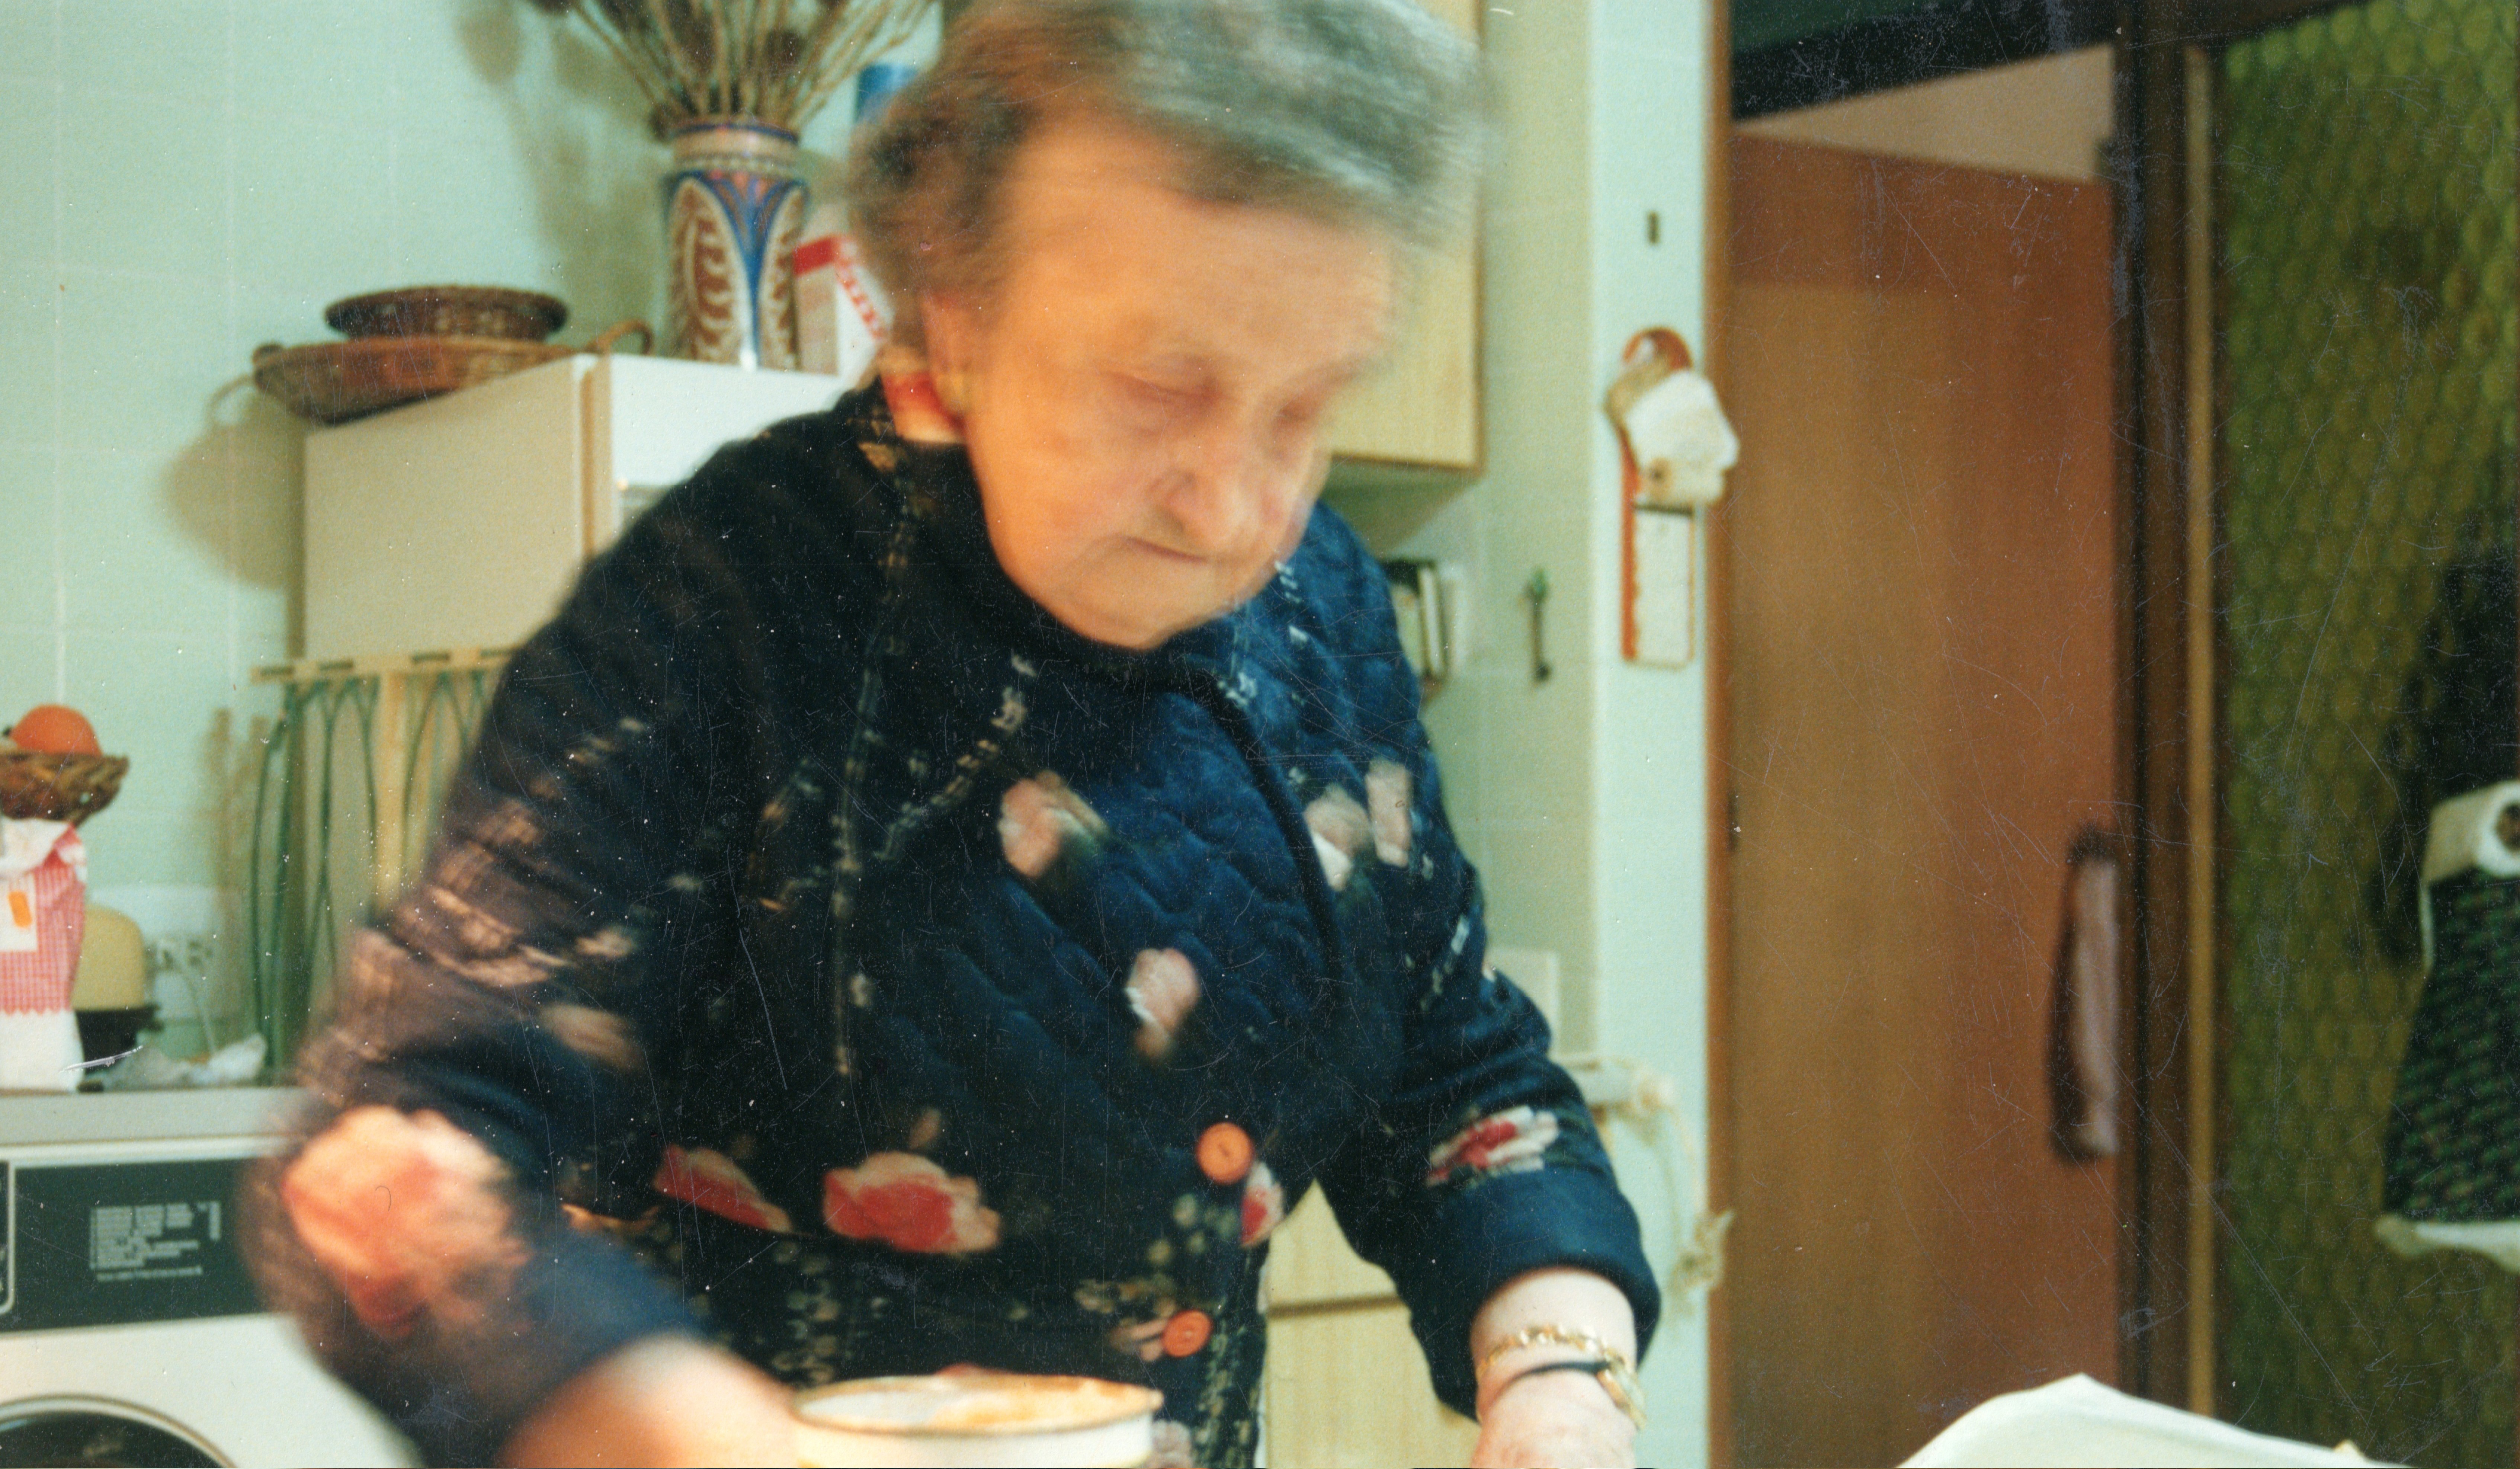 abuela marita y los pasteles de boniato